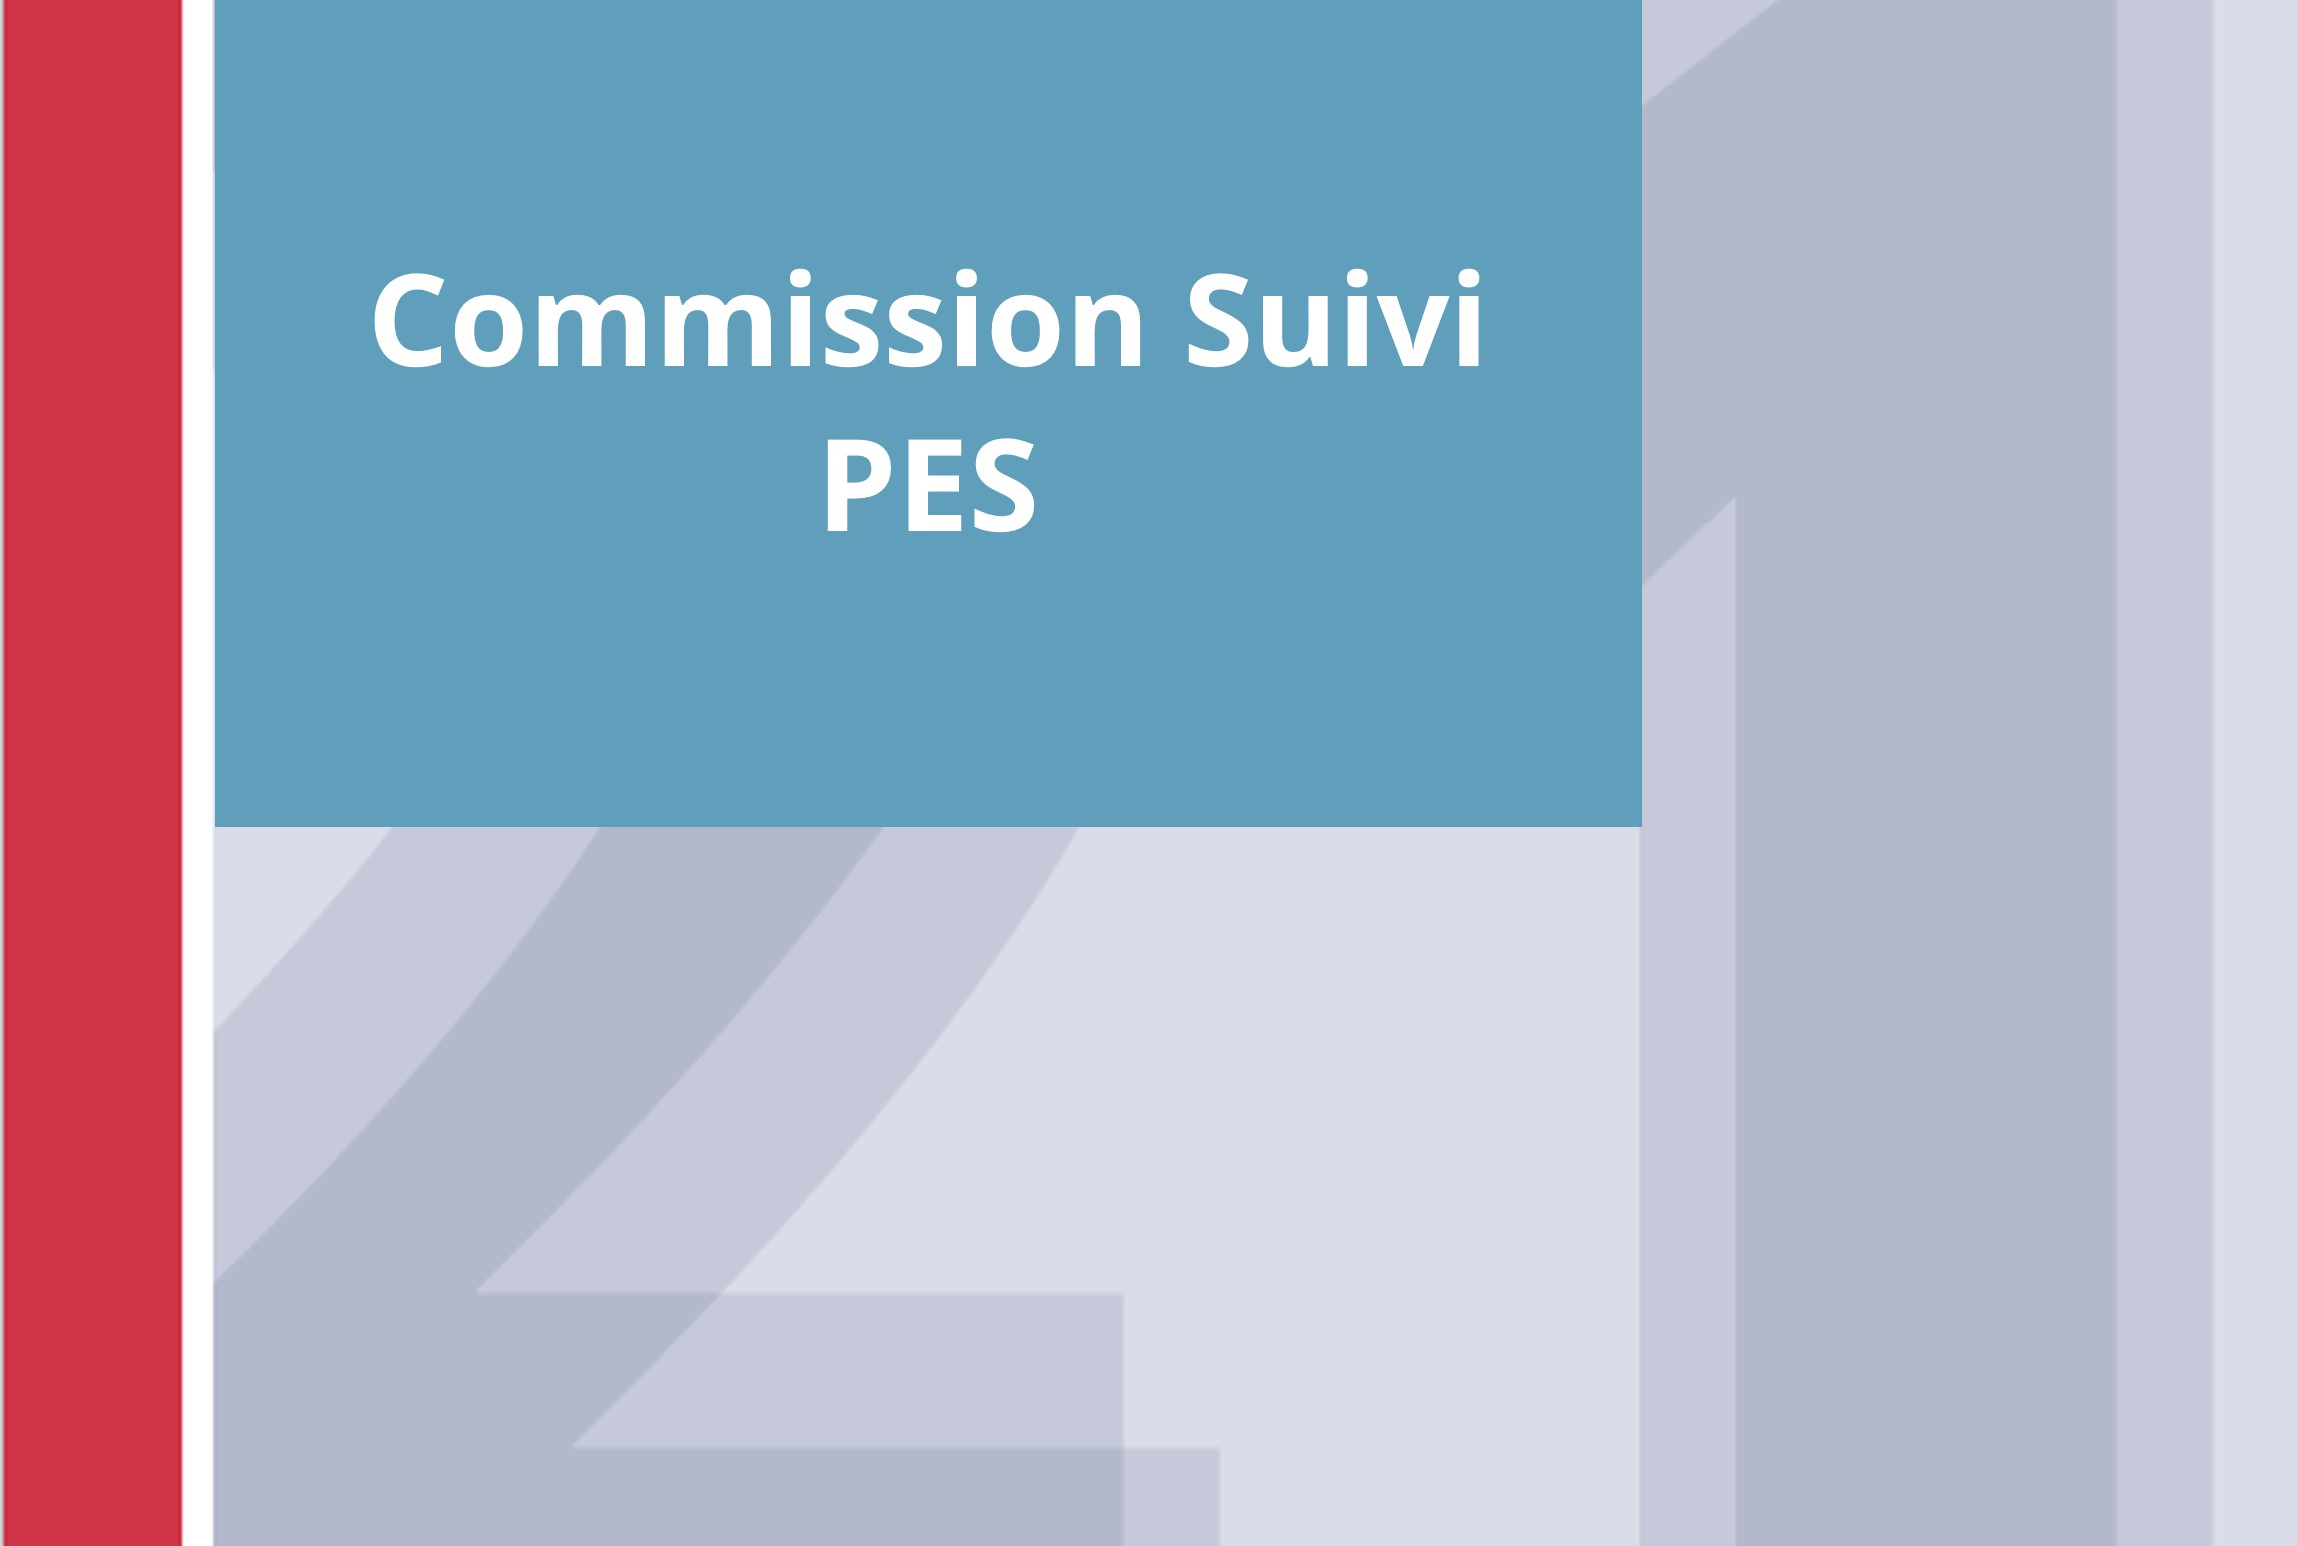  Commission suivi PES 